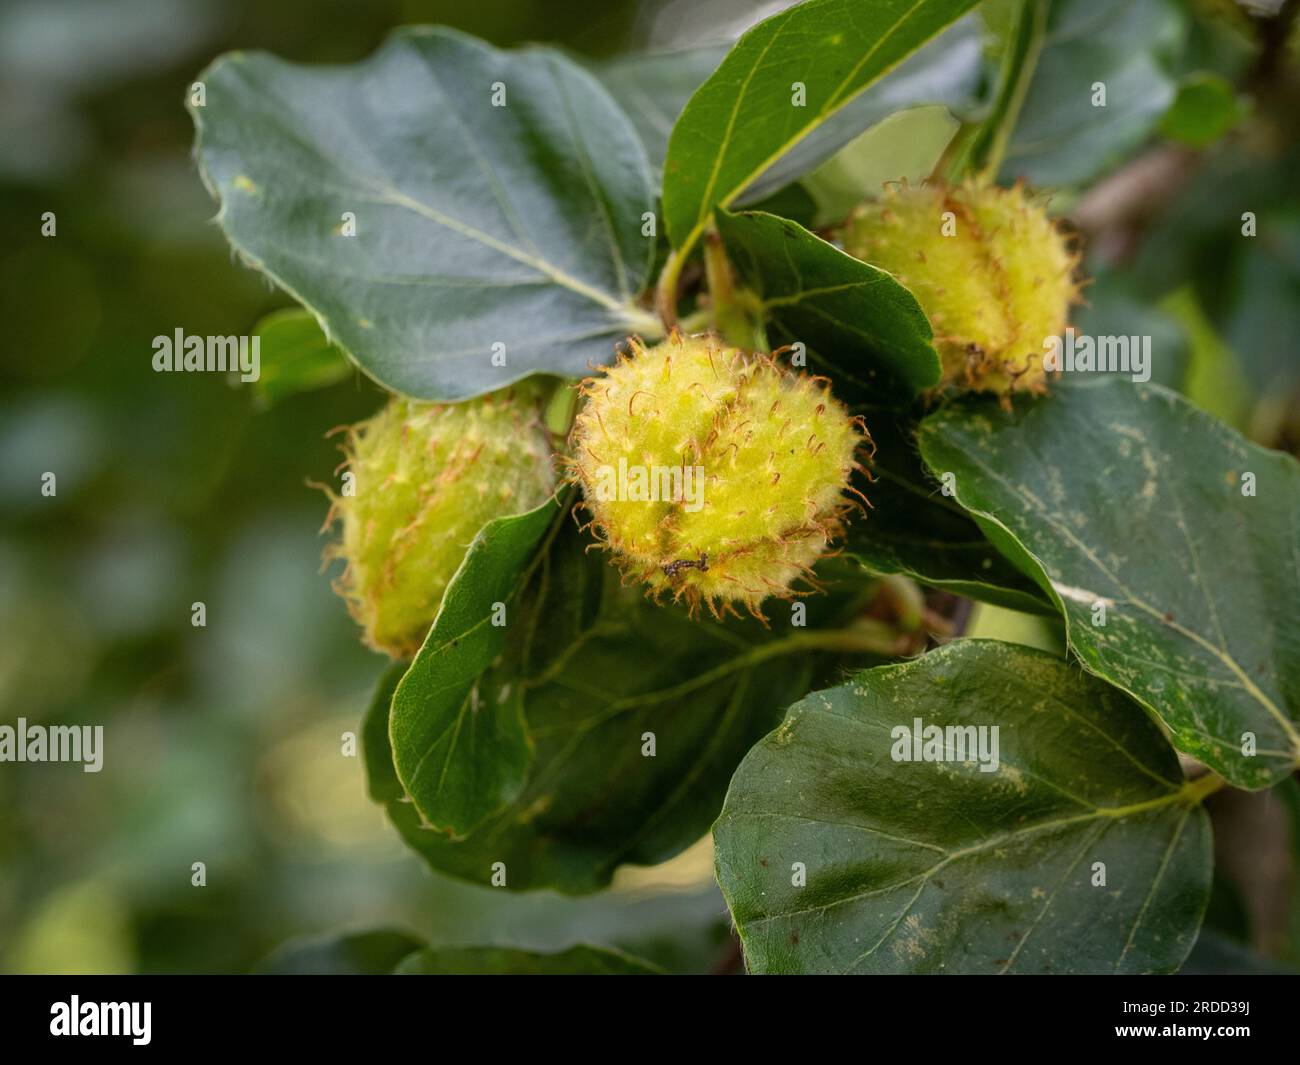 Borstenschalen Nüsse von Fagus sylvatica Rotundifolia, auch bekannt als Europäische Buche mit rundem Blätterblatt, die ihre einzigartige Konsistenz und Form aufweisen. Stockfoto